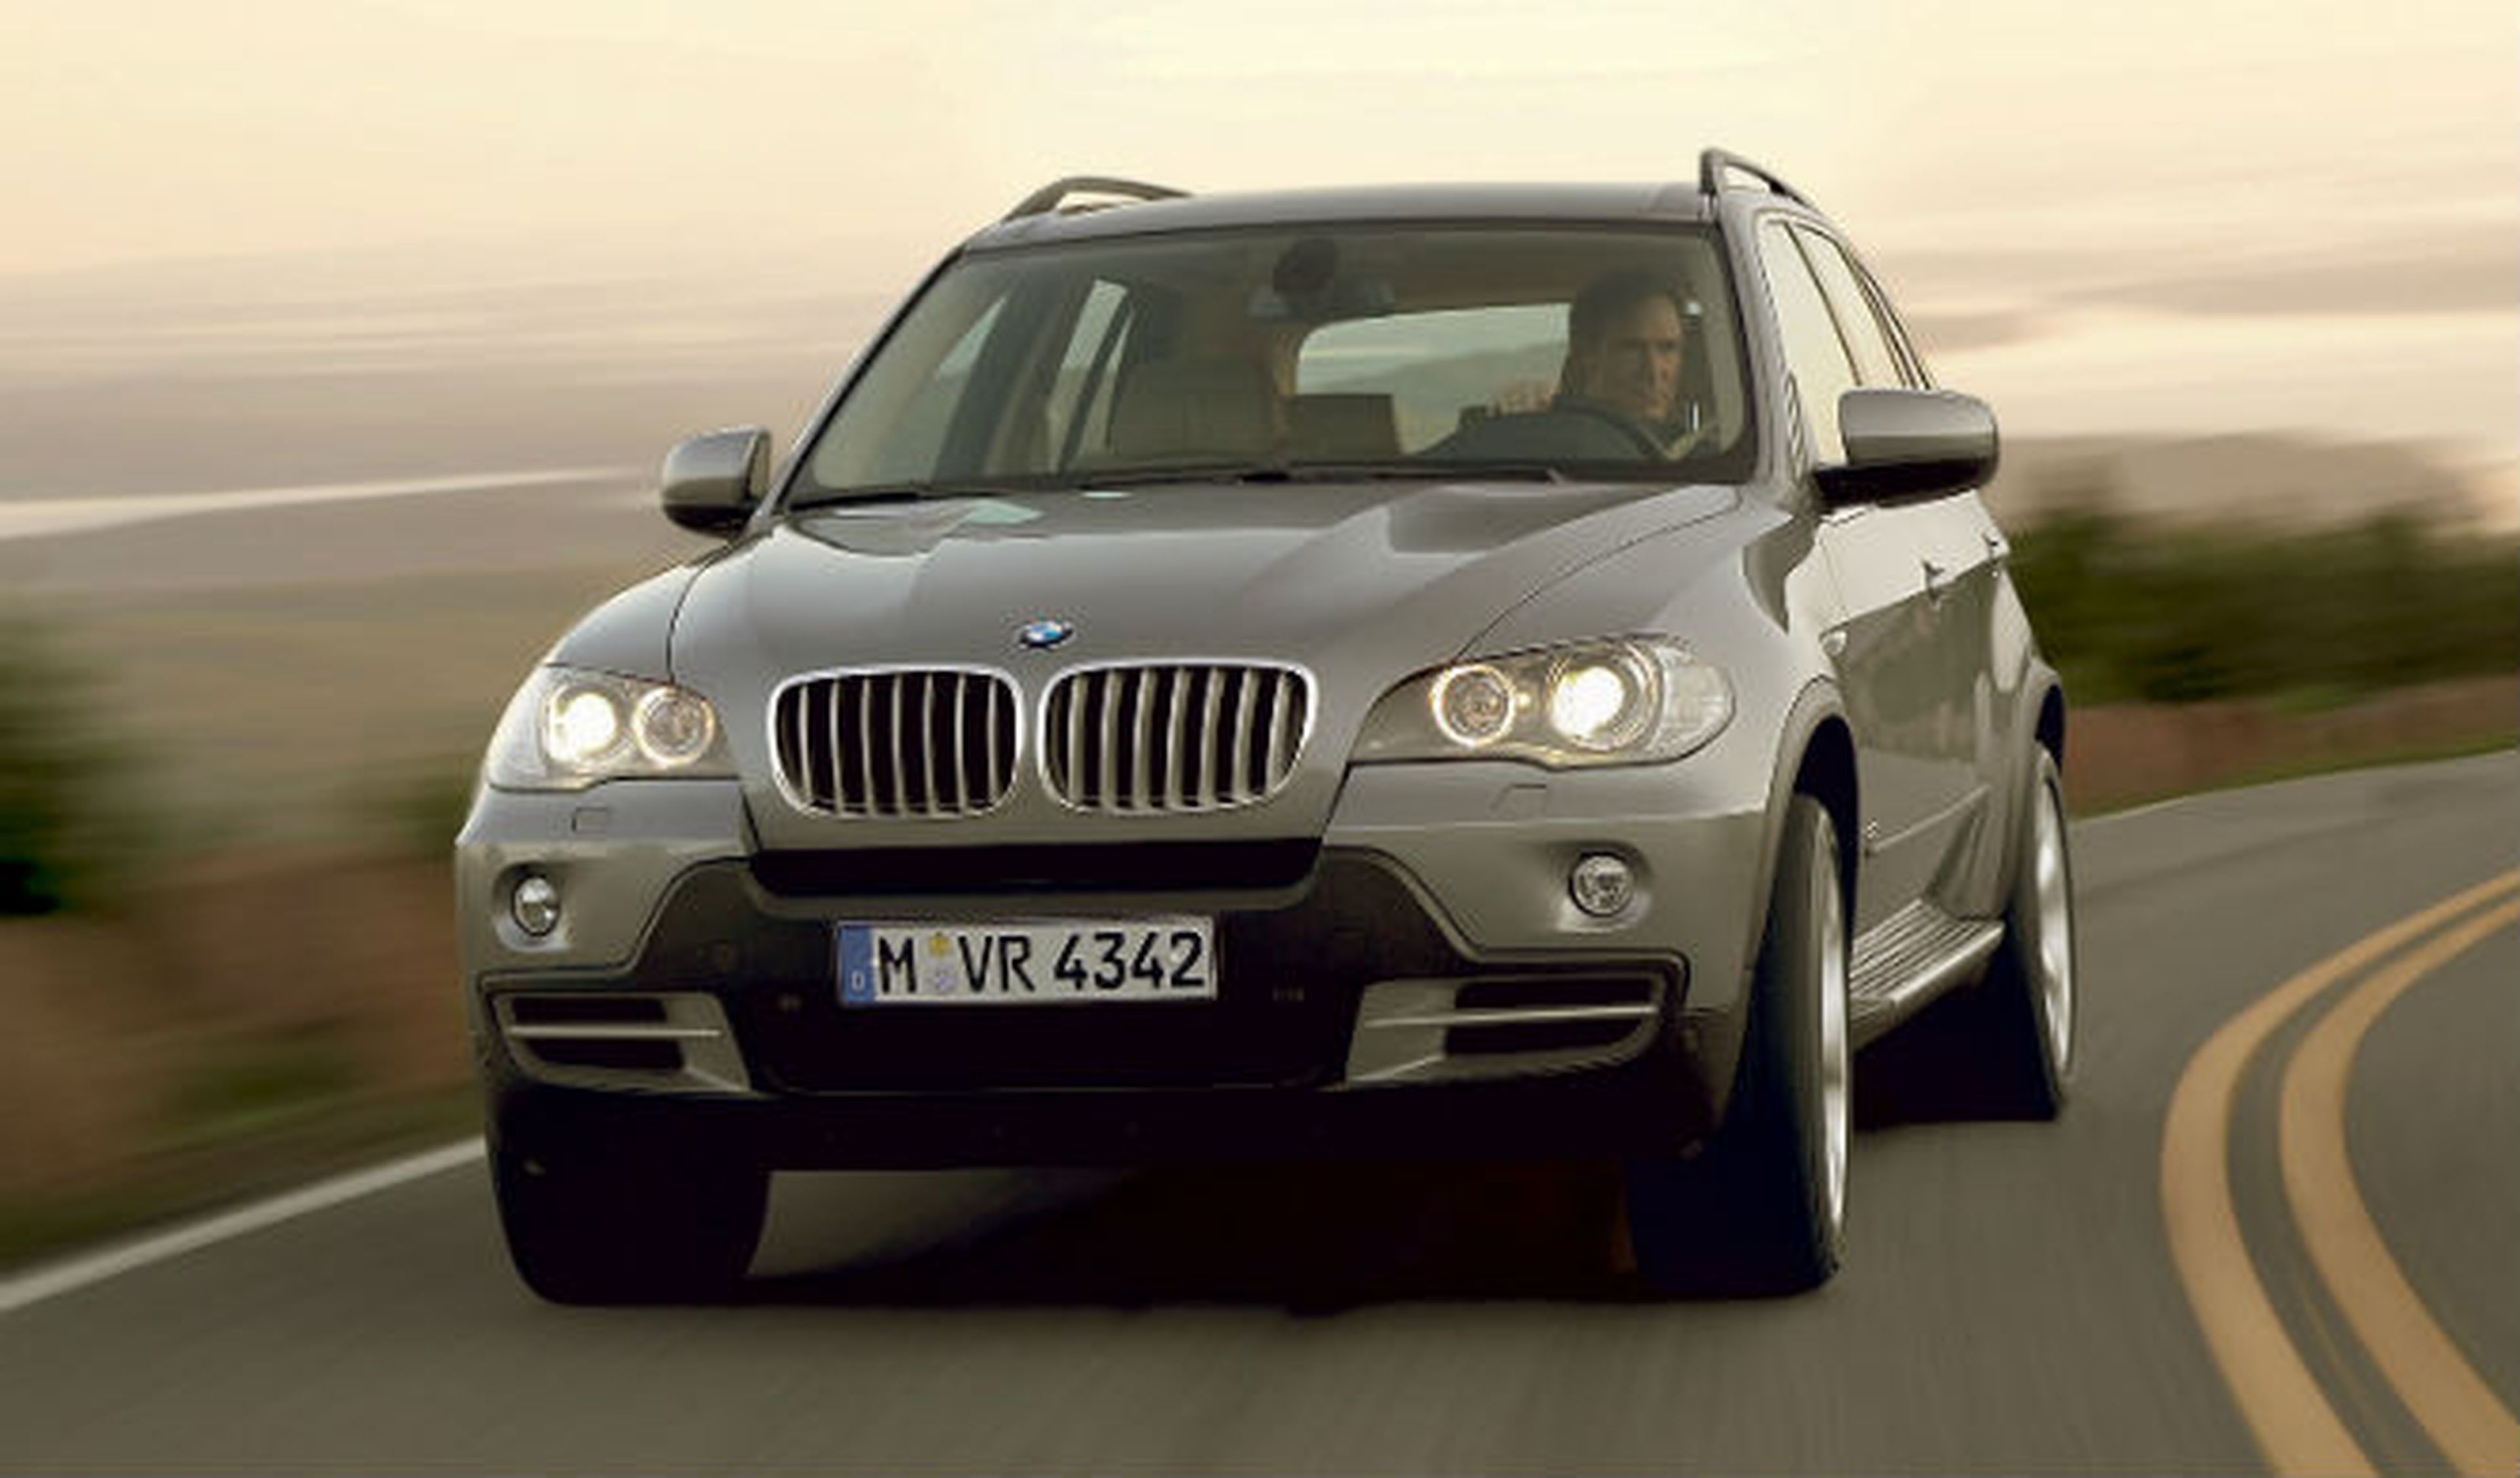 BMW: las noticias sobre los incendios son sensacionalistas